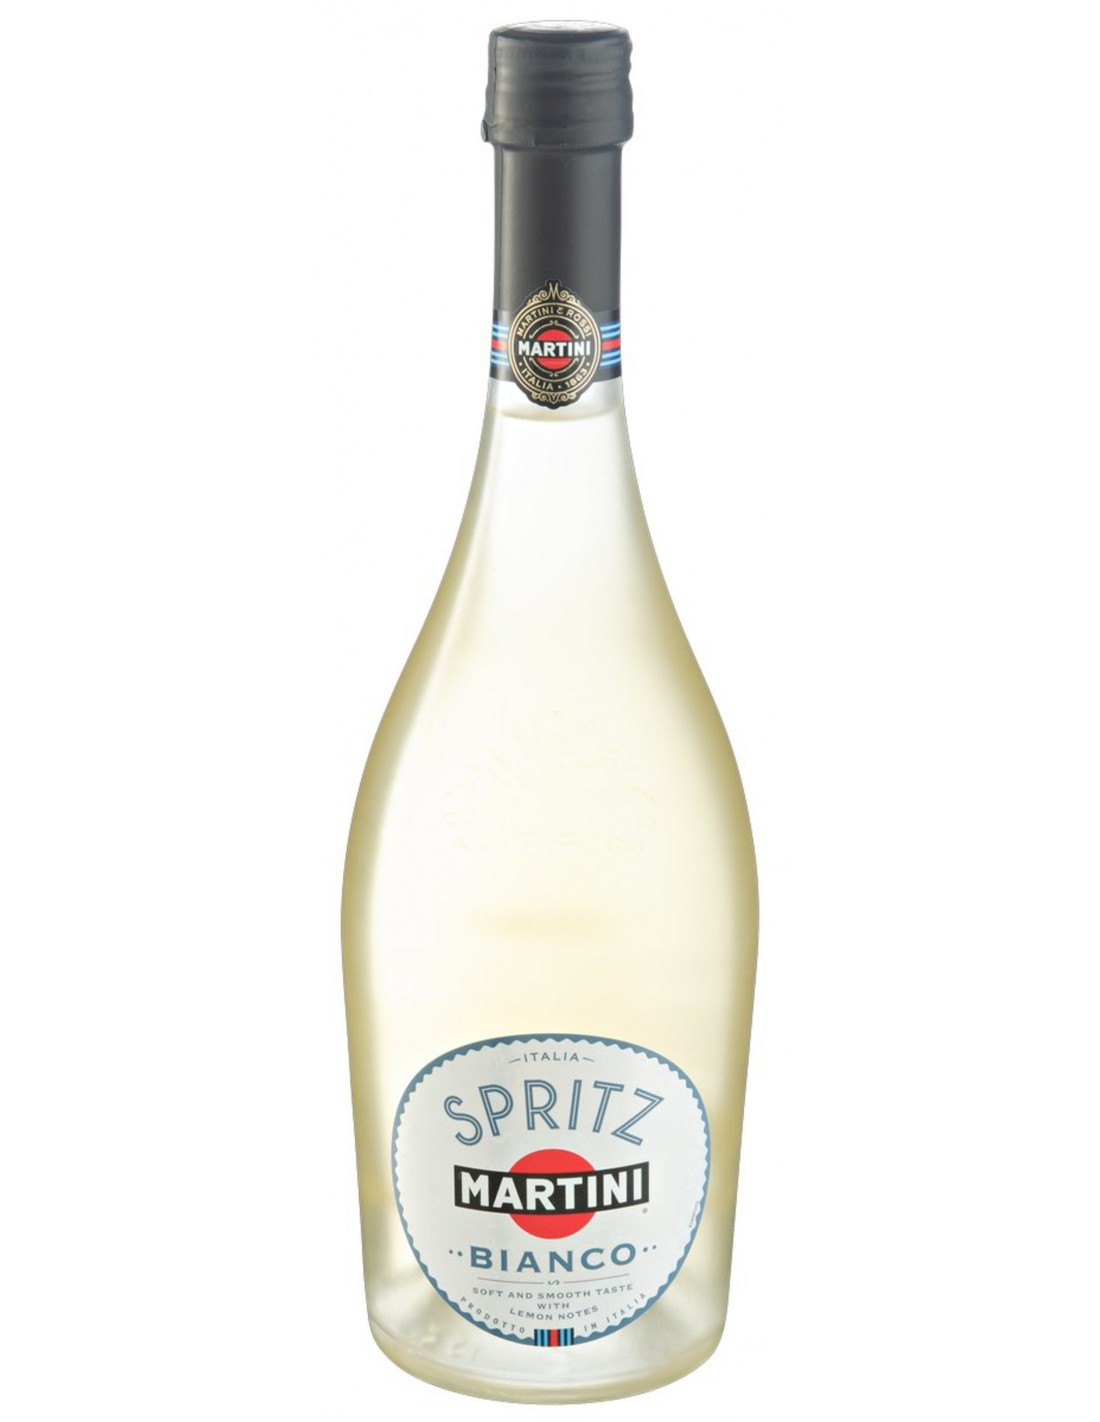 Aperitiv Martini Spritz Bianco, 8% alc., 0.75L, Italia